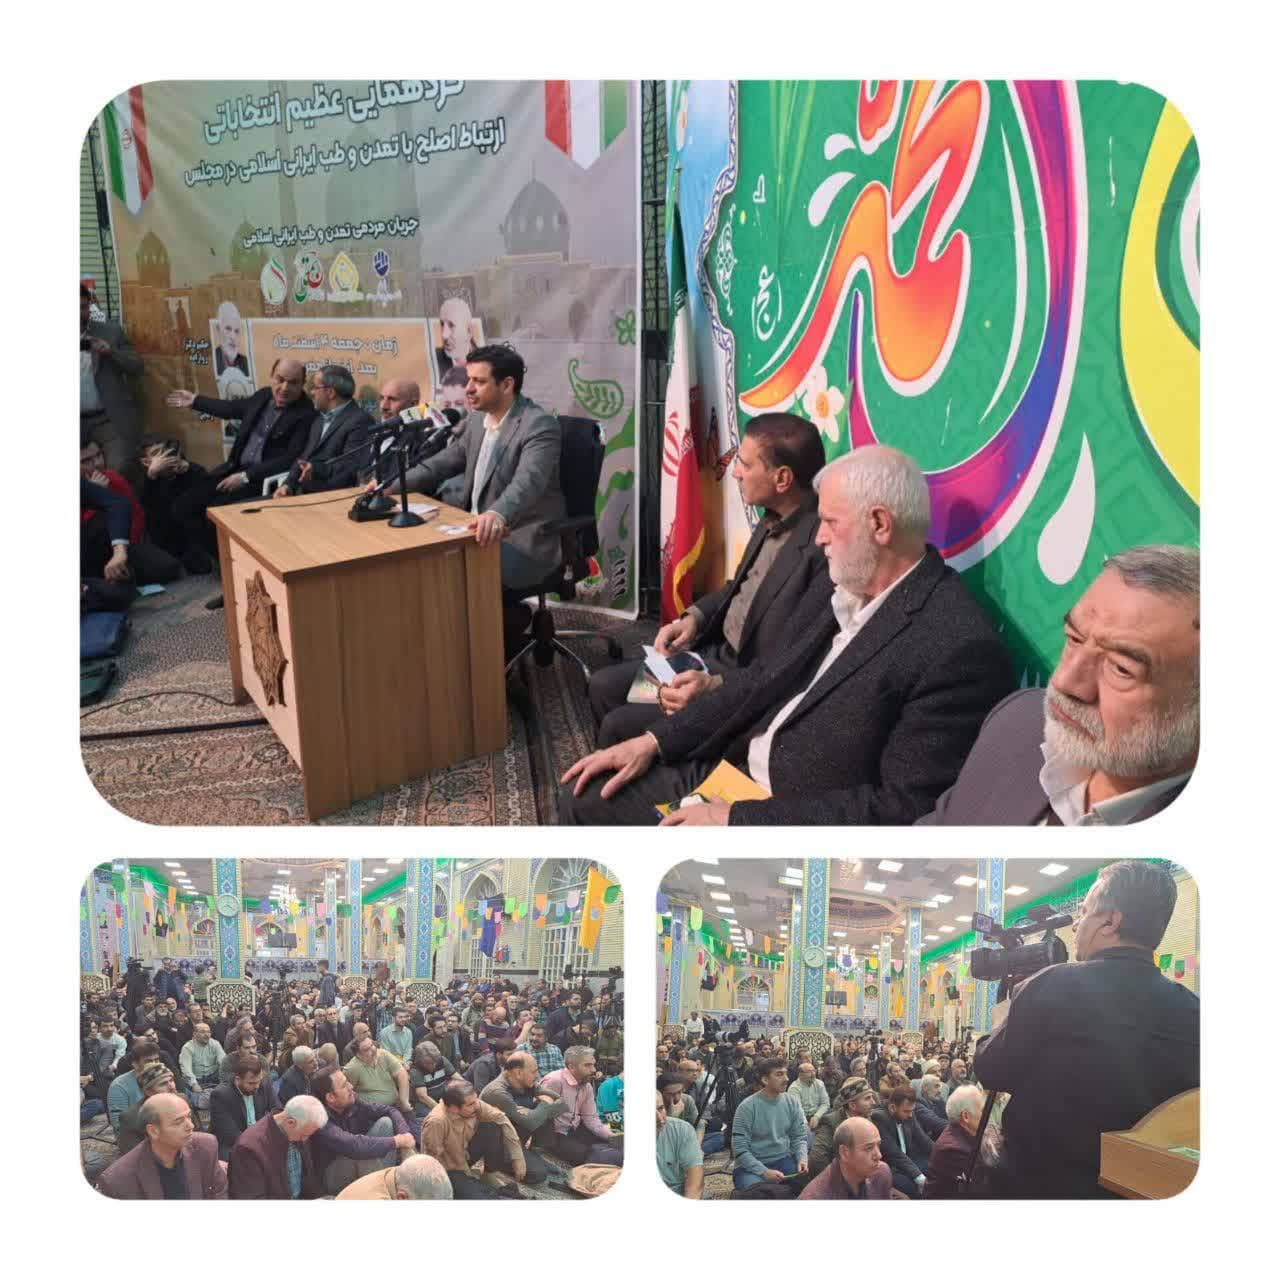 سخنرانی حکیم دکتر روازاده در مسجد جامع ابوذر در شرق تهران به تاریخ ۱۴۰۲/۱۲/۰۴ جمعه بعد از نماز مغرب و عشا